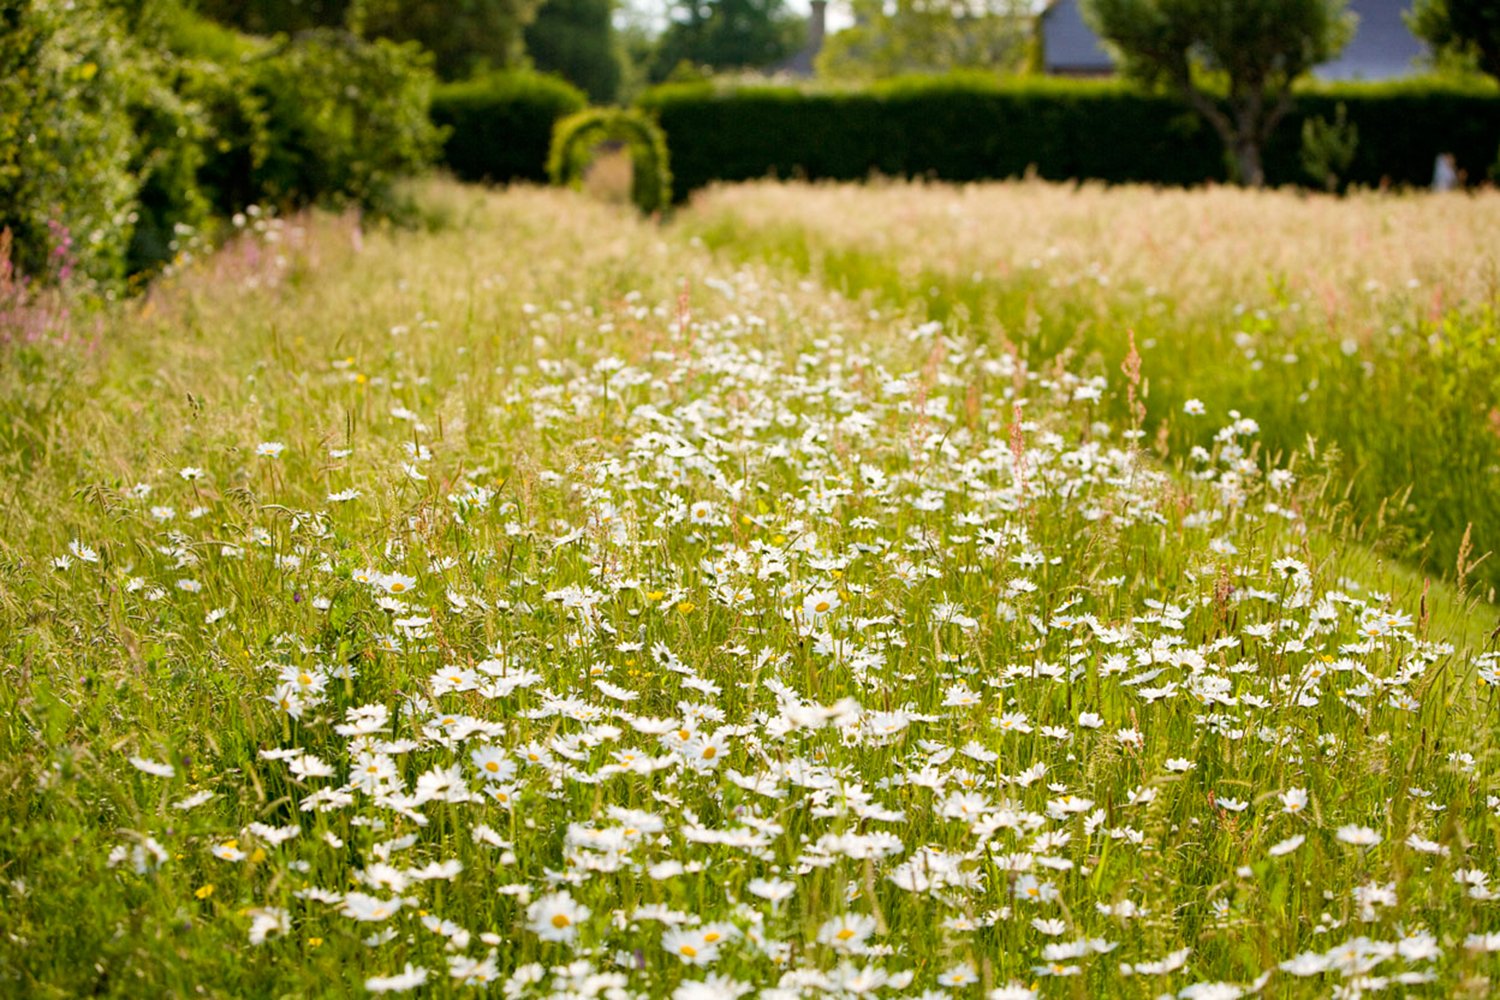 Jane_Brown_Landscape_Architect_Garden_Design_Old_Rectory_West_Sussex_Vegetable_Garden_Wild_Flower_Meadow6.jpg